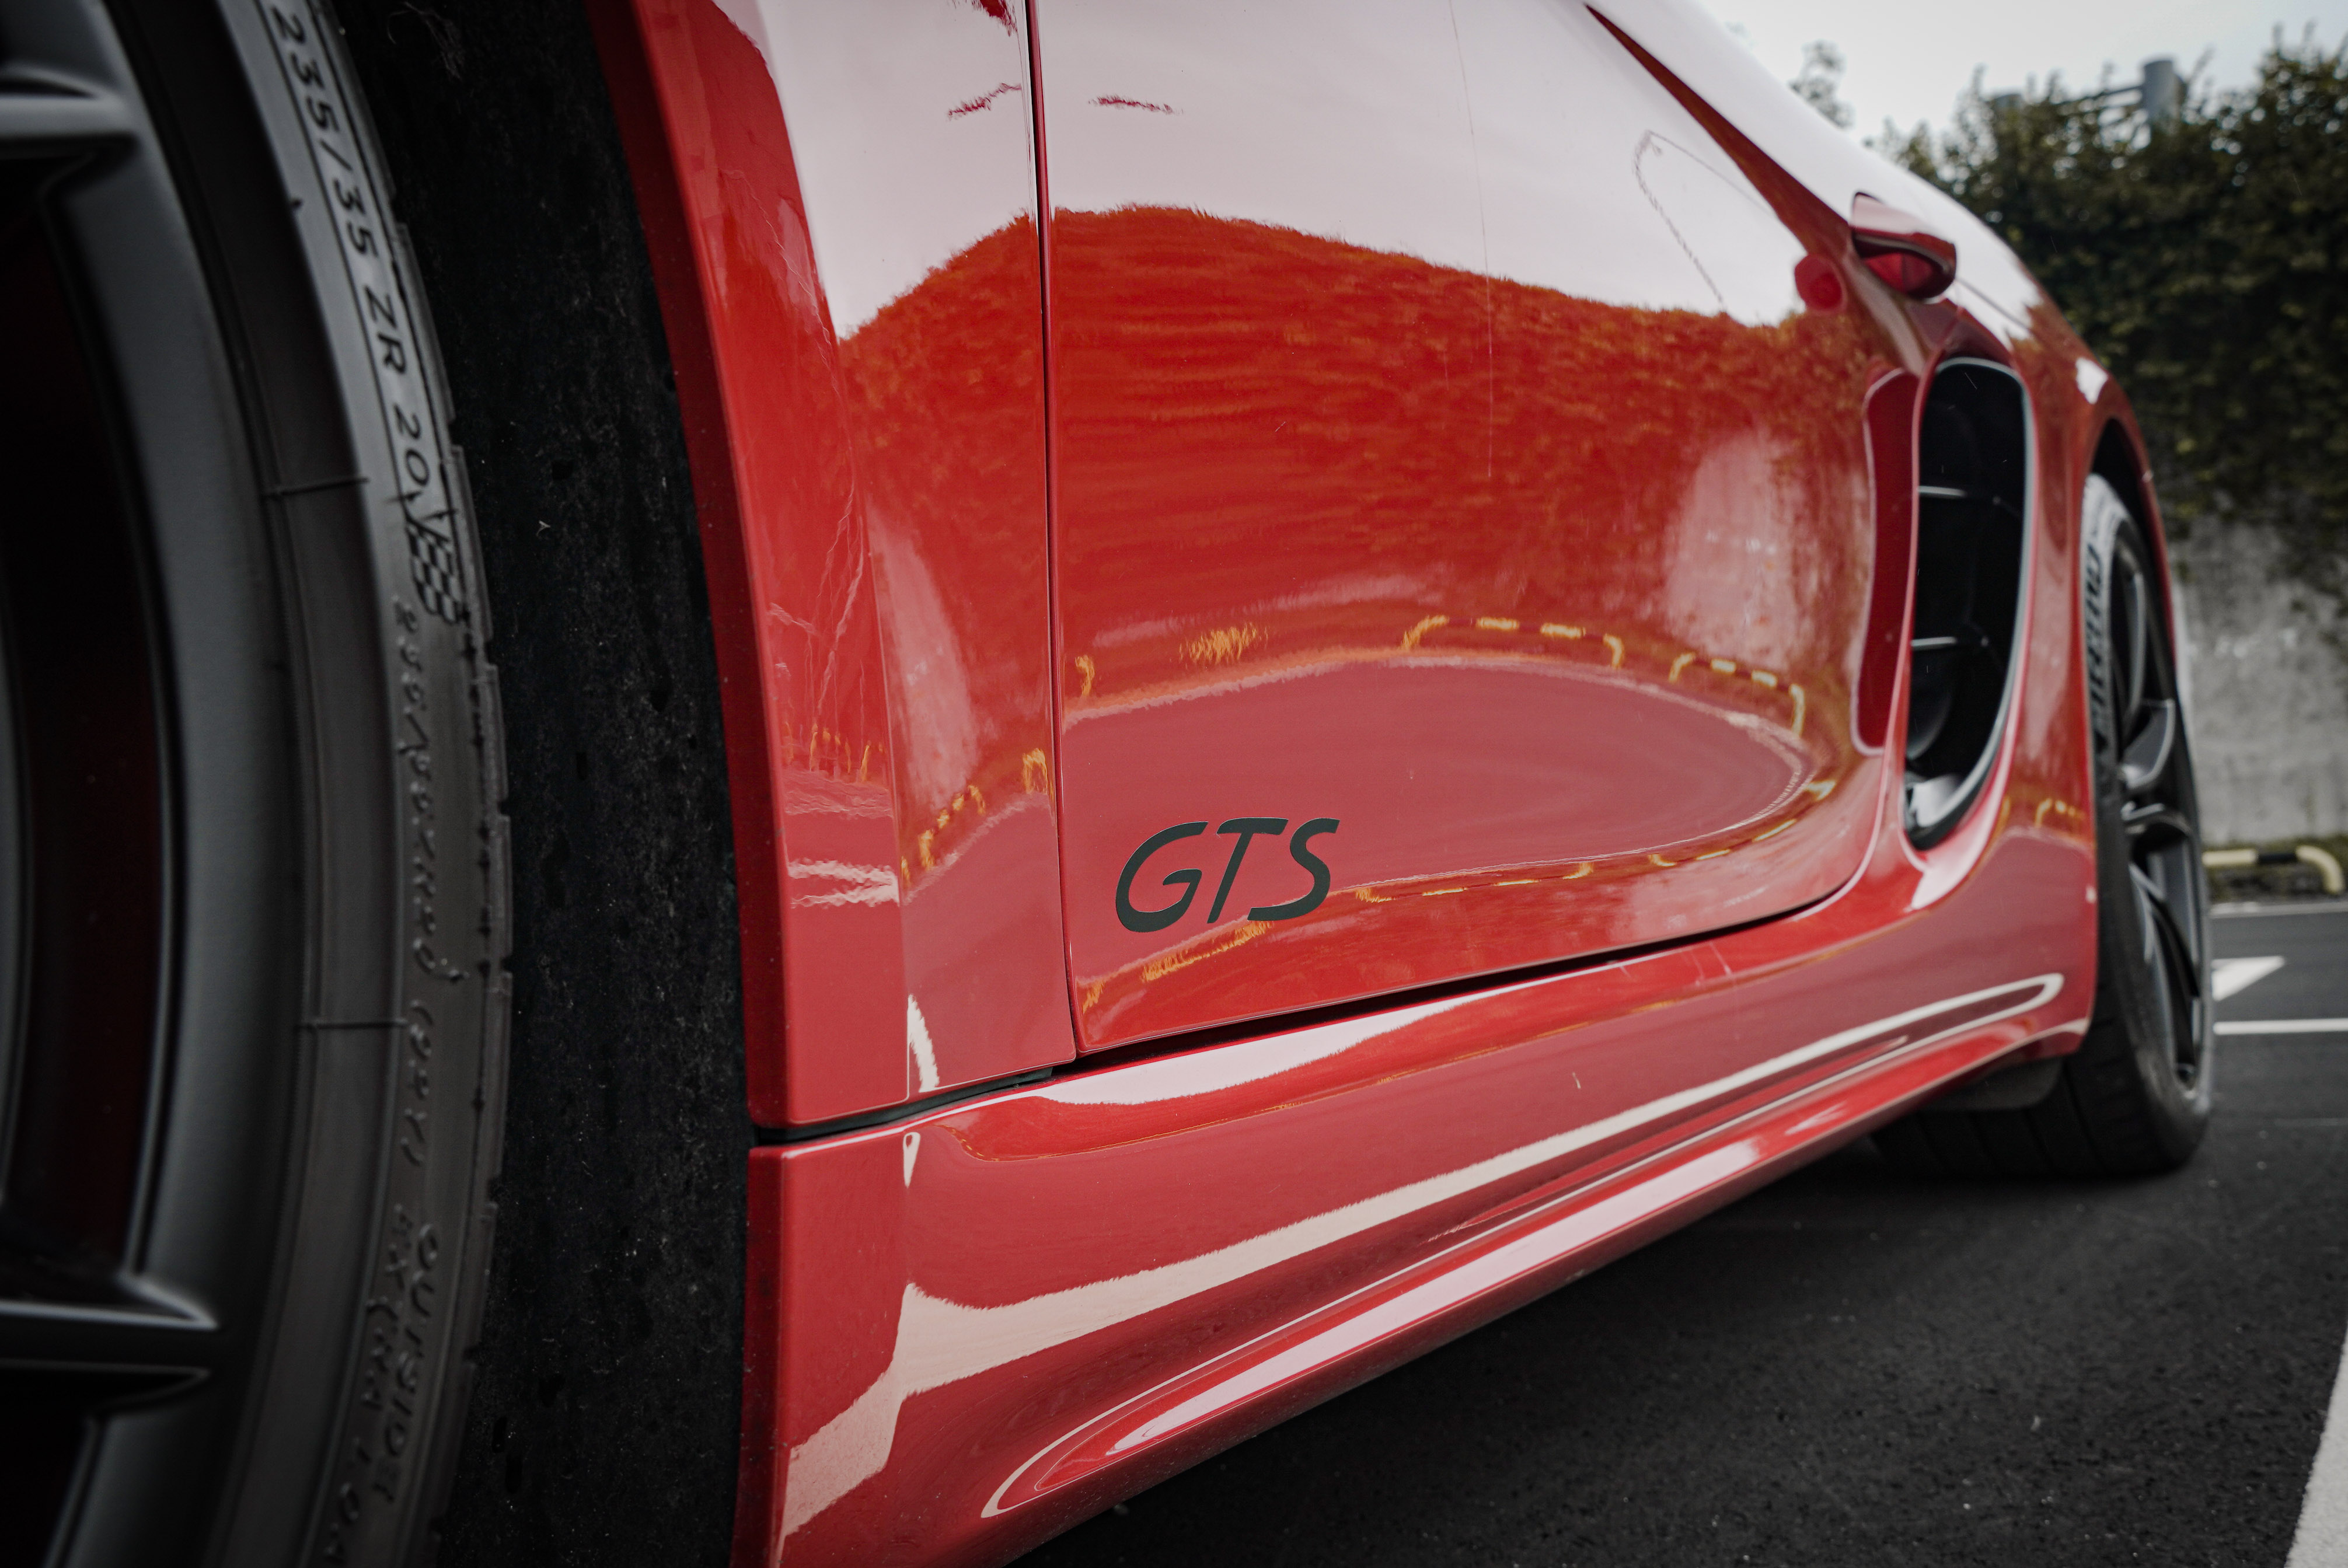 車側有 GTS 字樣彰顯身份。